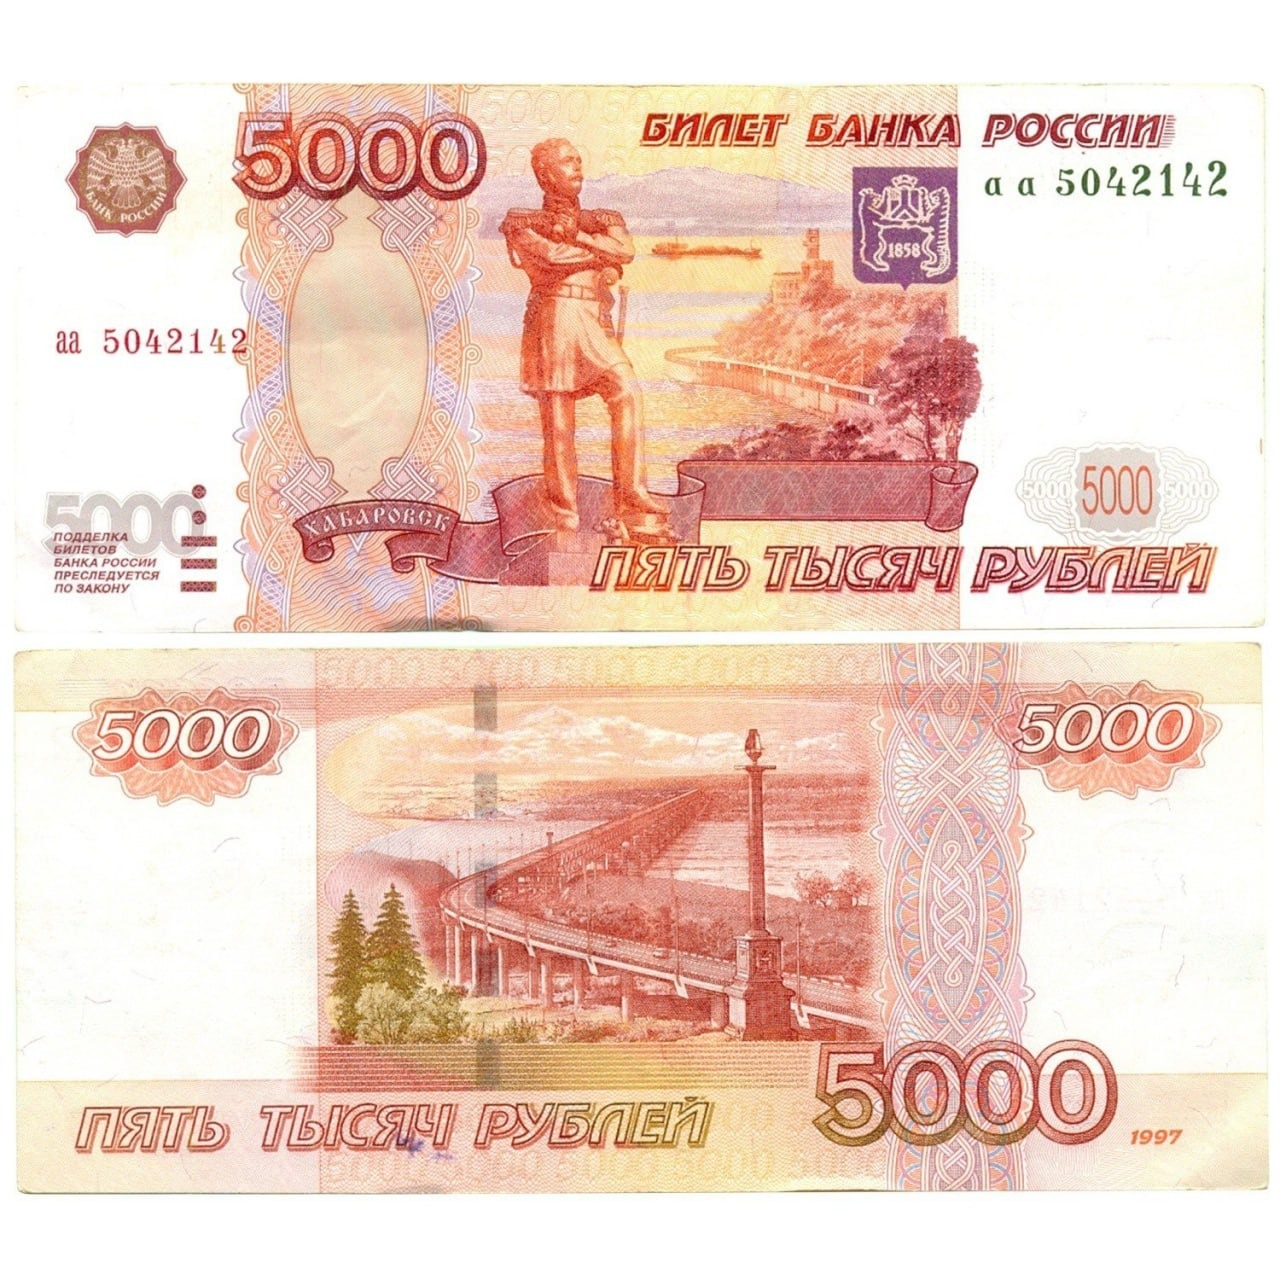 5000 рублей старого образца 